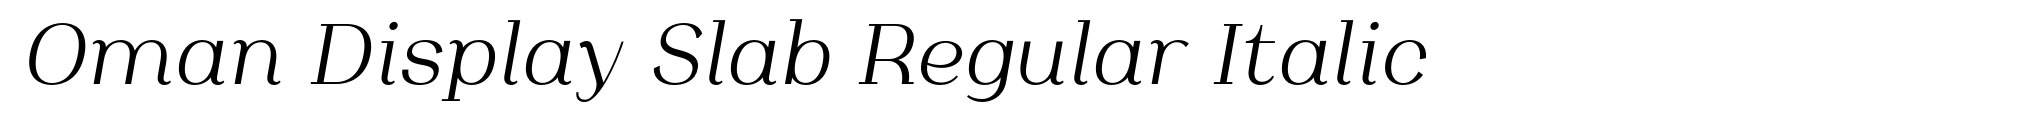 Oman Display Slab Regular Italic image